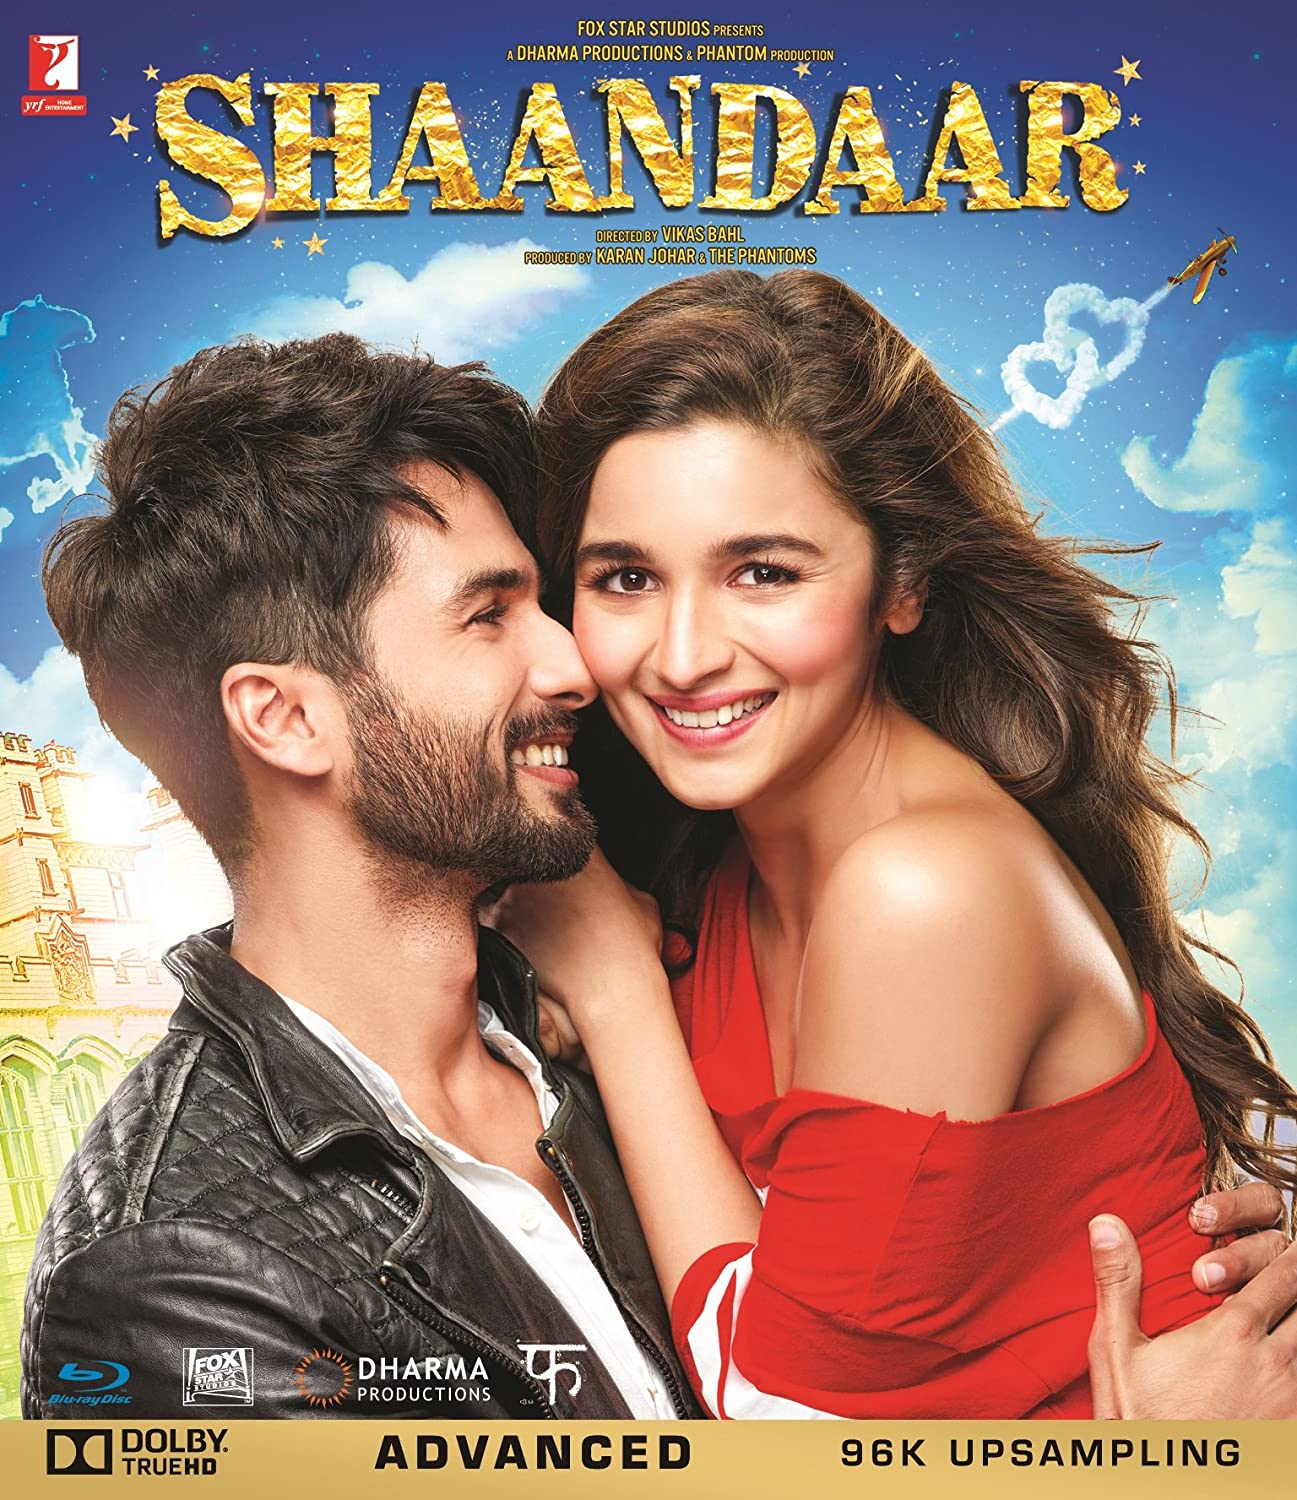 shaandaar movie full download